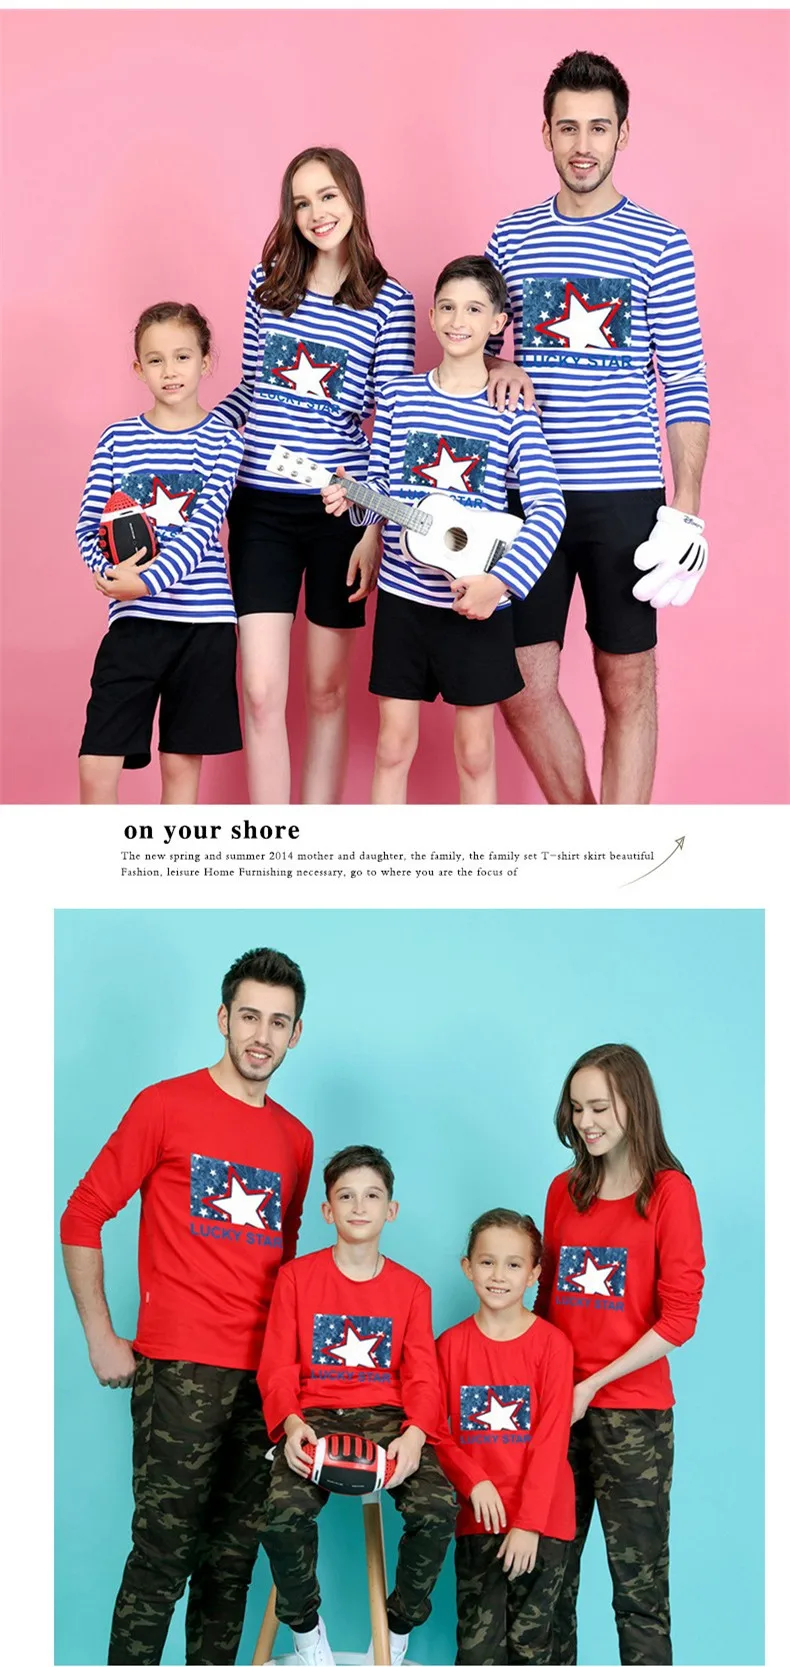 Коллекция 2019 года, Семейные комплекты с надписью «lucky star», футболки для всей семьи, одежда для мамы, дочки и сына, большие размеры, футболки